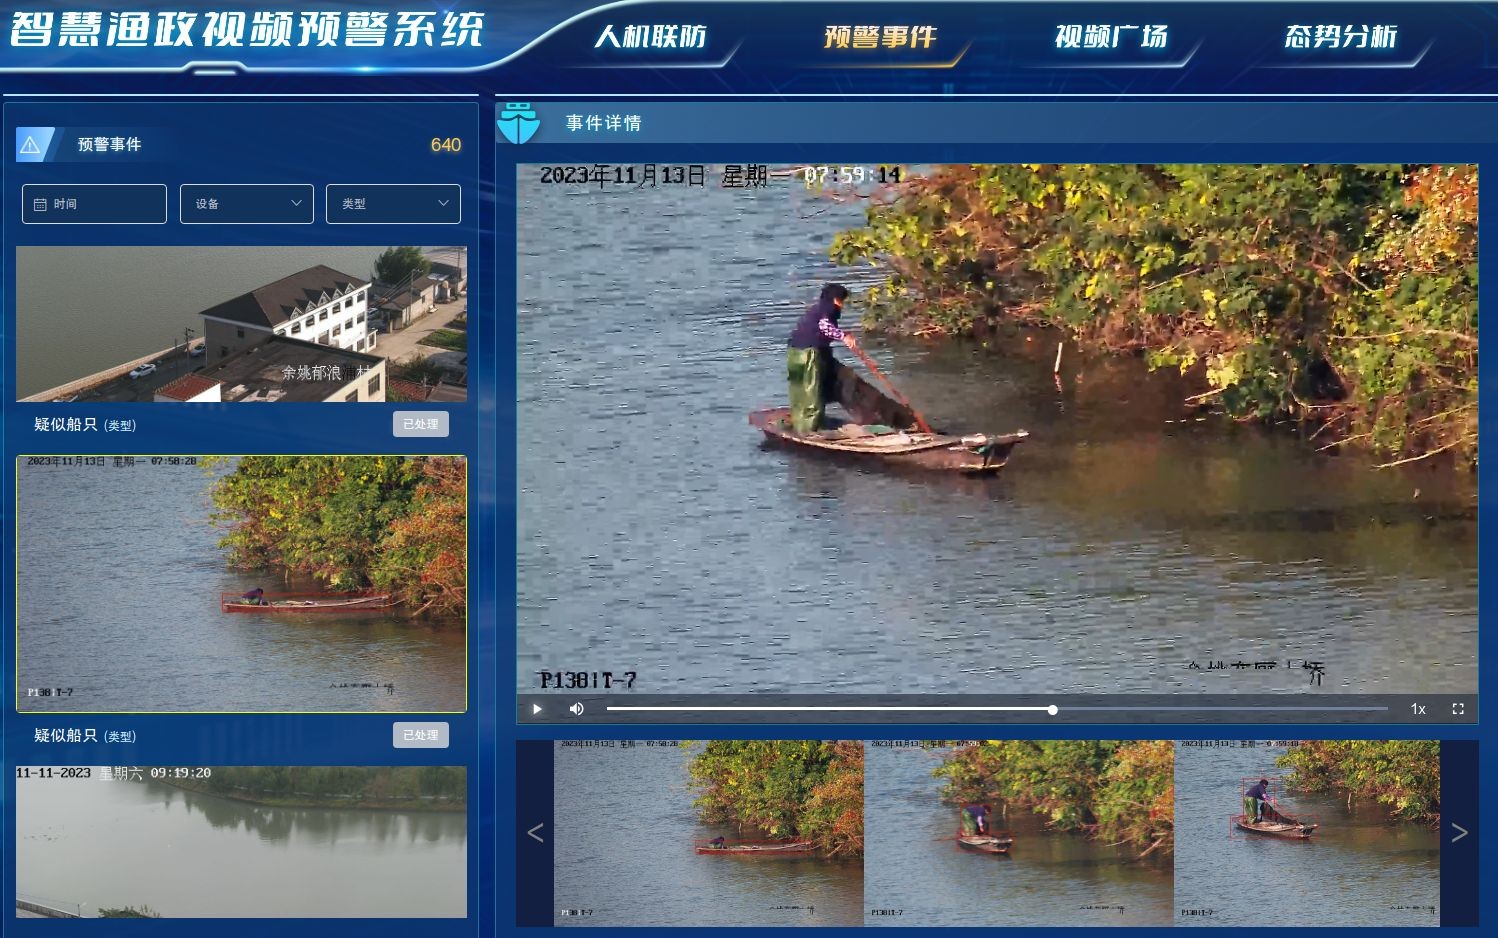 宁波市智慧渔政视频预警服务系统累计识别涉渔事件9432起